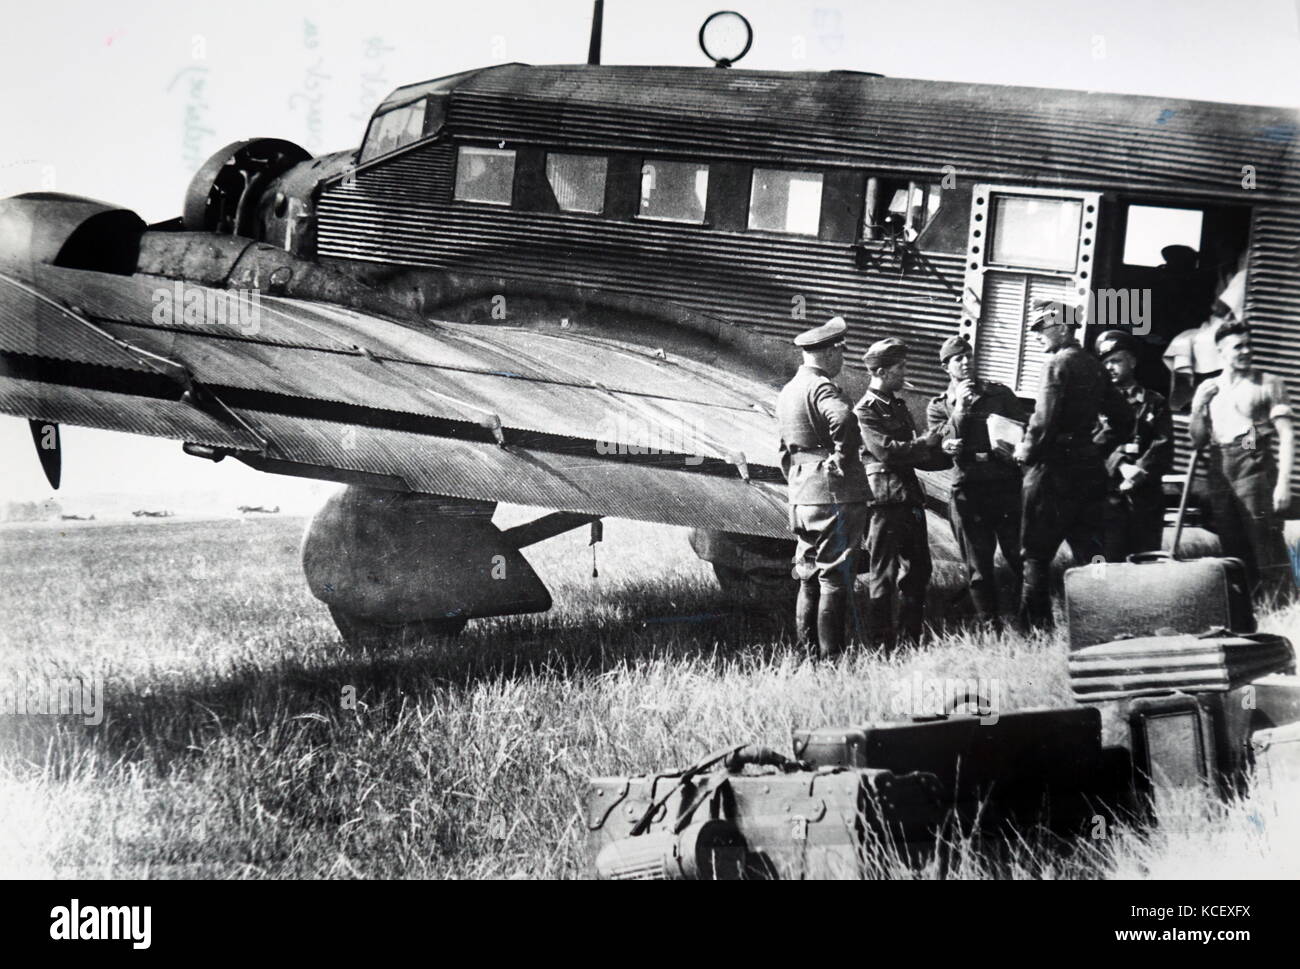 Foto von deutschen Flugzeugen in le Bourget, Paris, während der deutschen Besetzung Frankreichs 1940. Vom 20. Jahrhundert Stockfoto